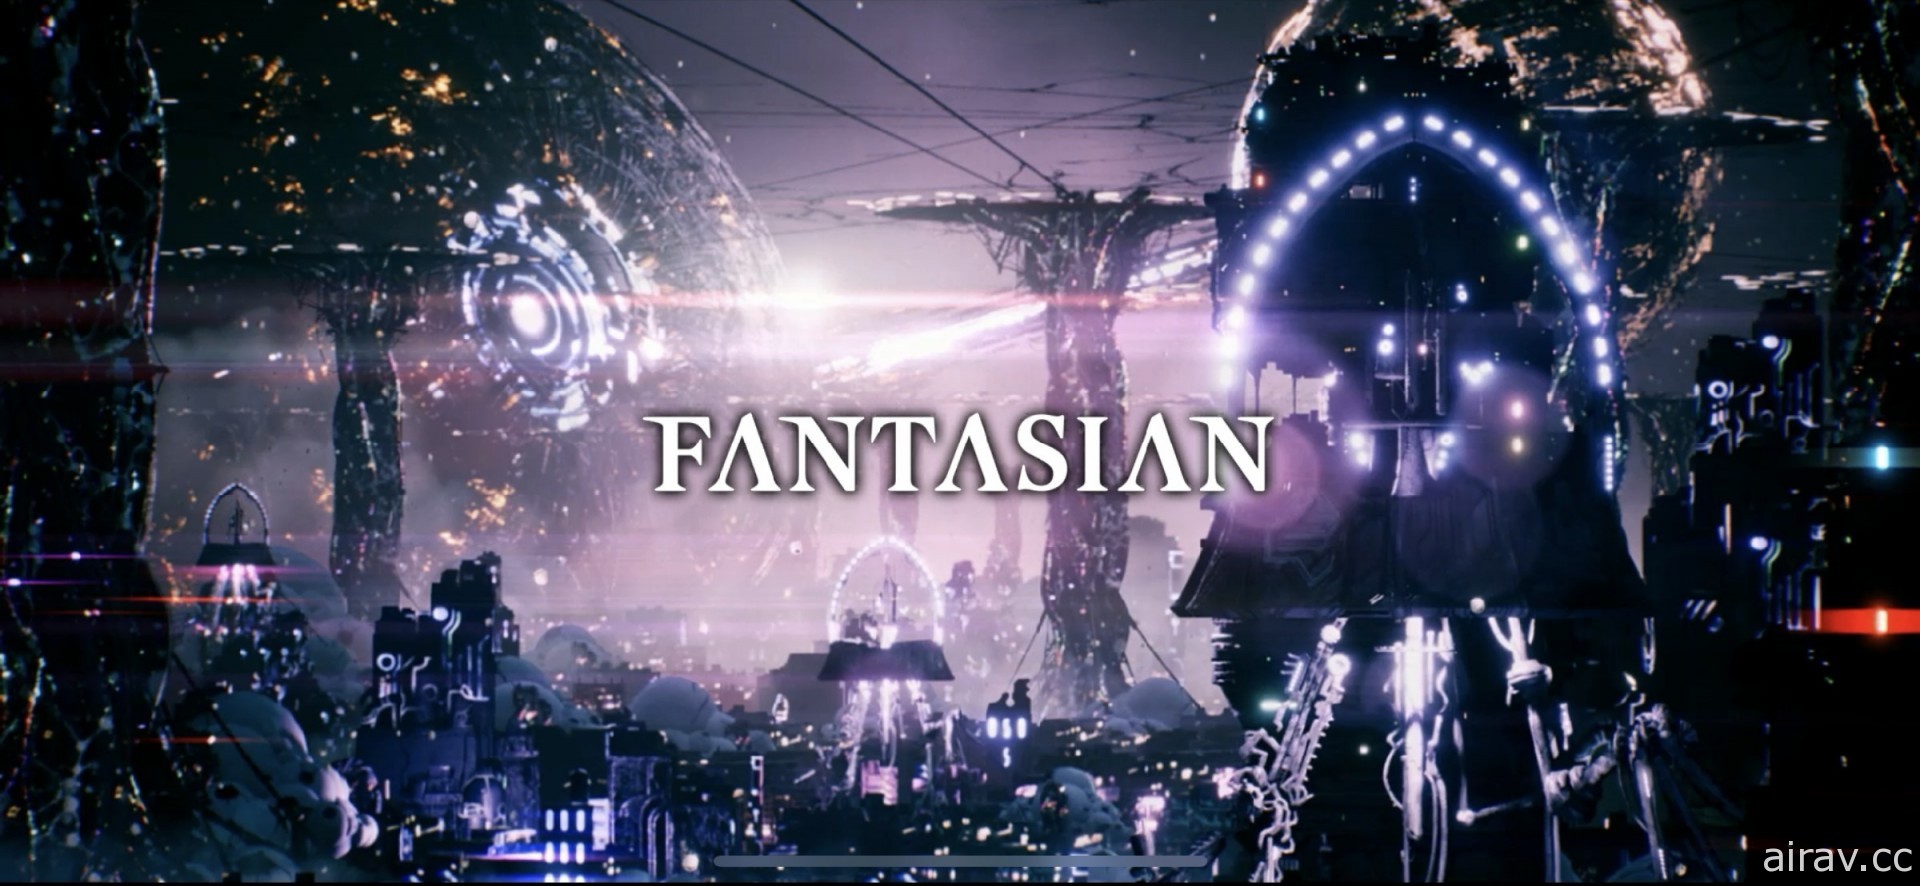 【試玩】坂口博信 x 植松伸夫最新力作《FANTASIAN》 延續《Final Fantasy》經典風格